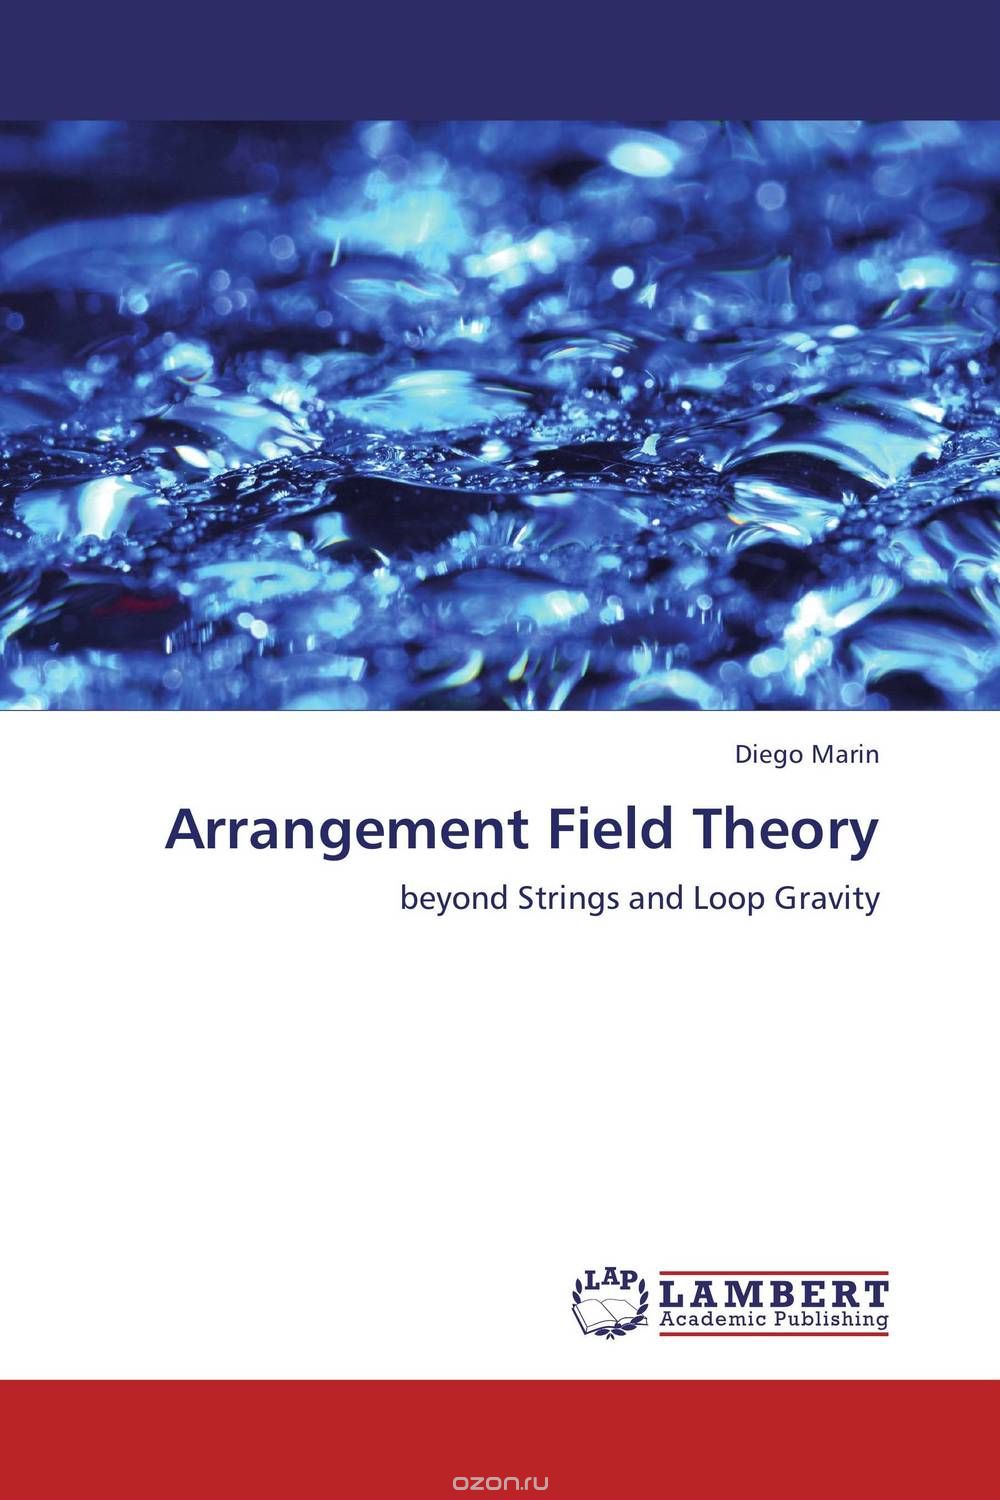 Скачать книгу "Arrangement Field Theory"